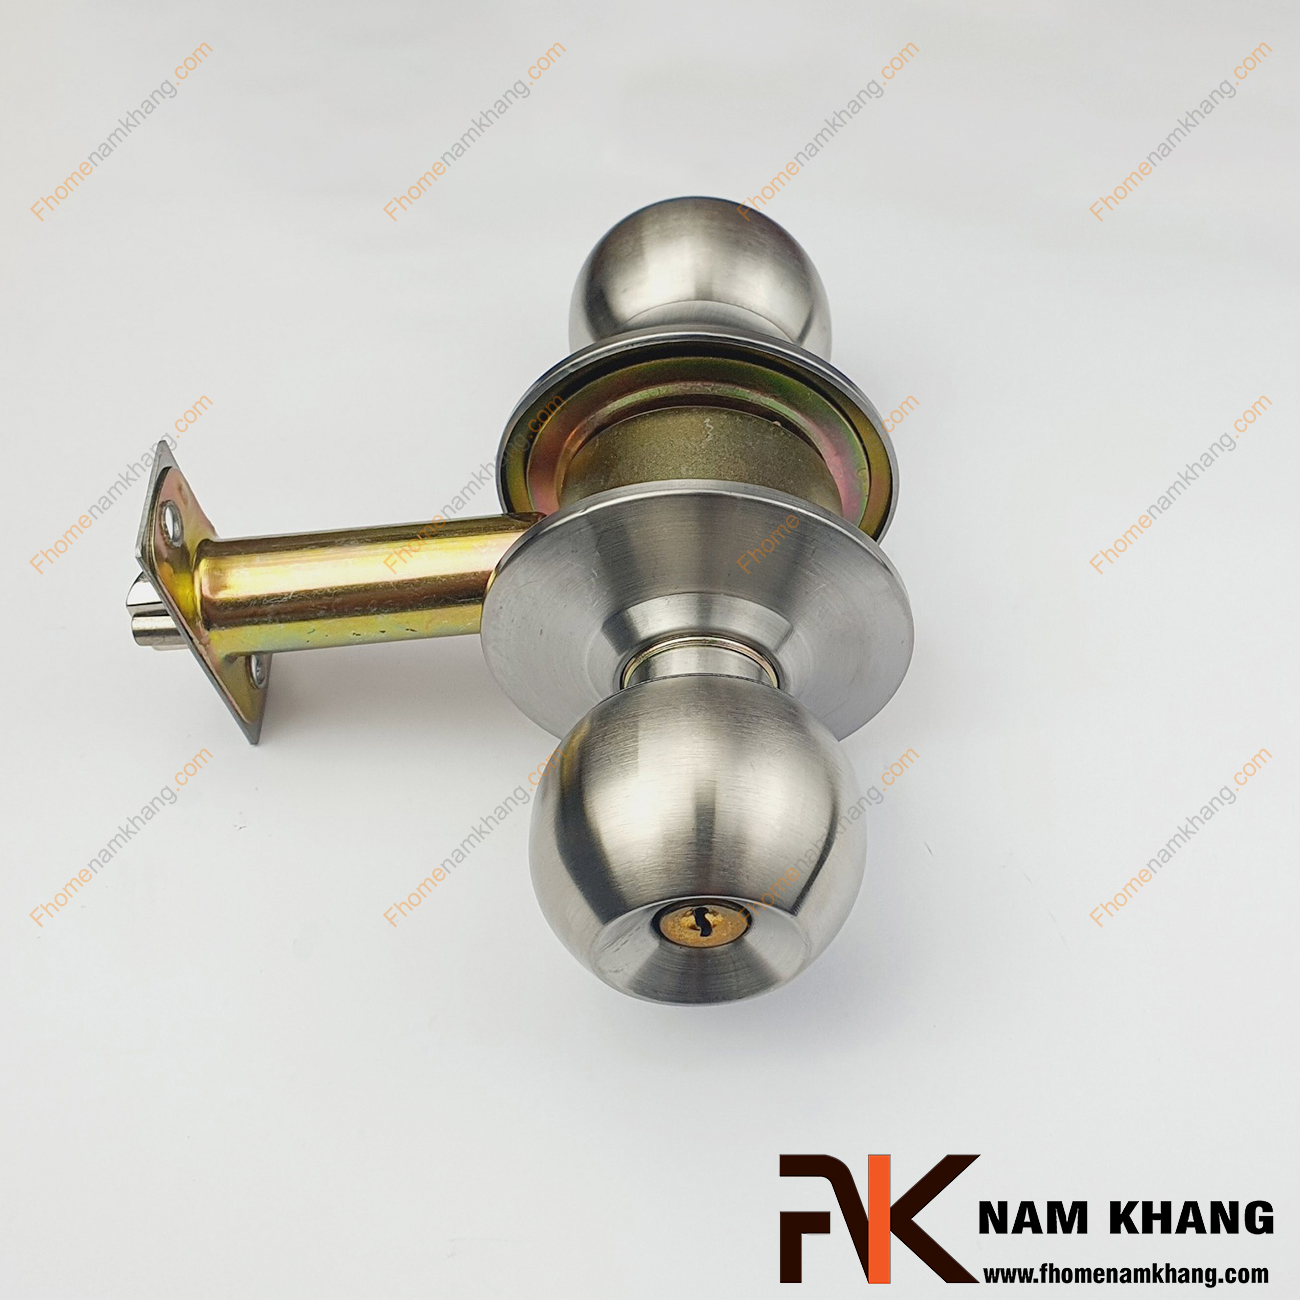 Khóa tay nắm tròn dạng cò dài NK430BLS-INOX là dạng khóa cửa thông dụng, đơn giản, có thiết kế tay nắm tròn dạng cầu bằng quả đấm.